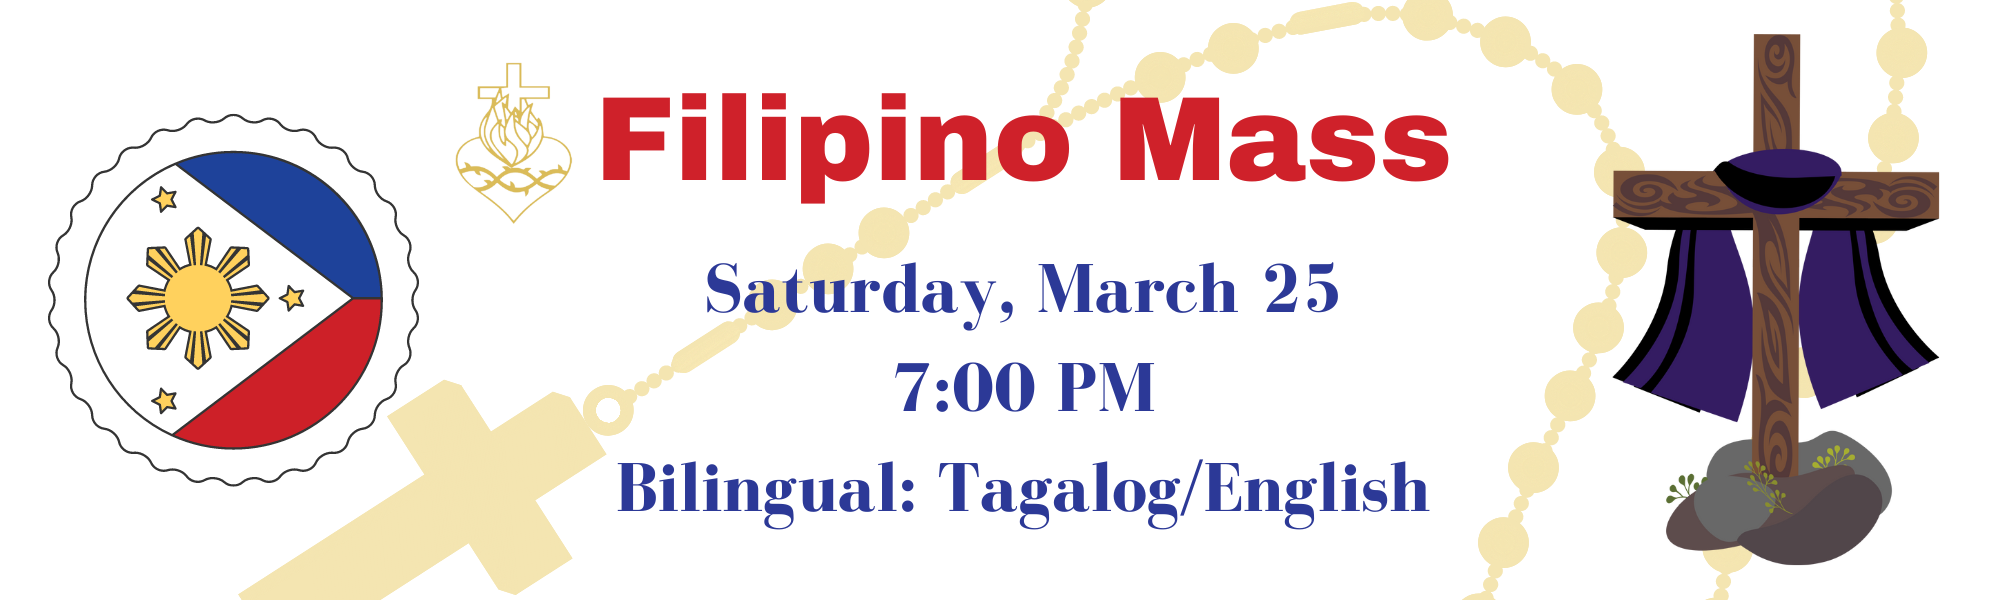 Filipino Mass March 25